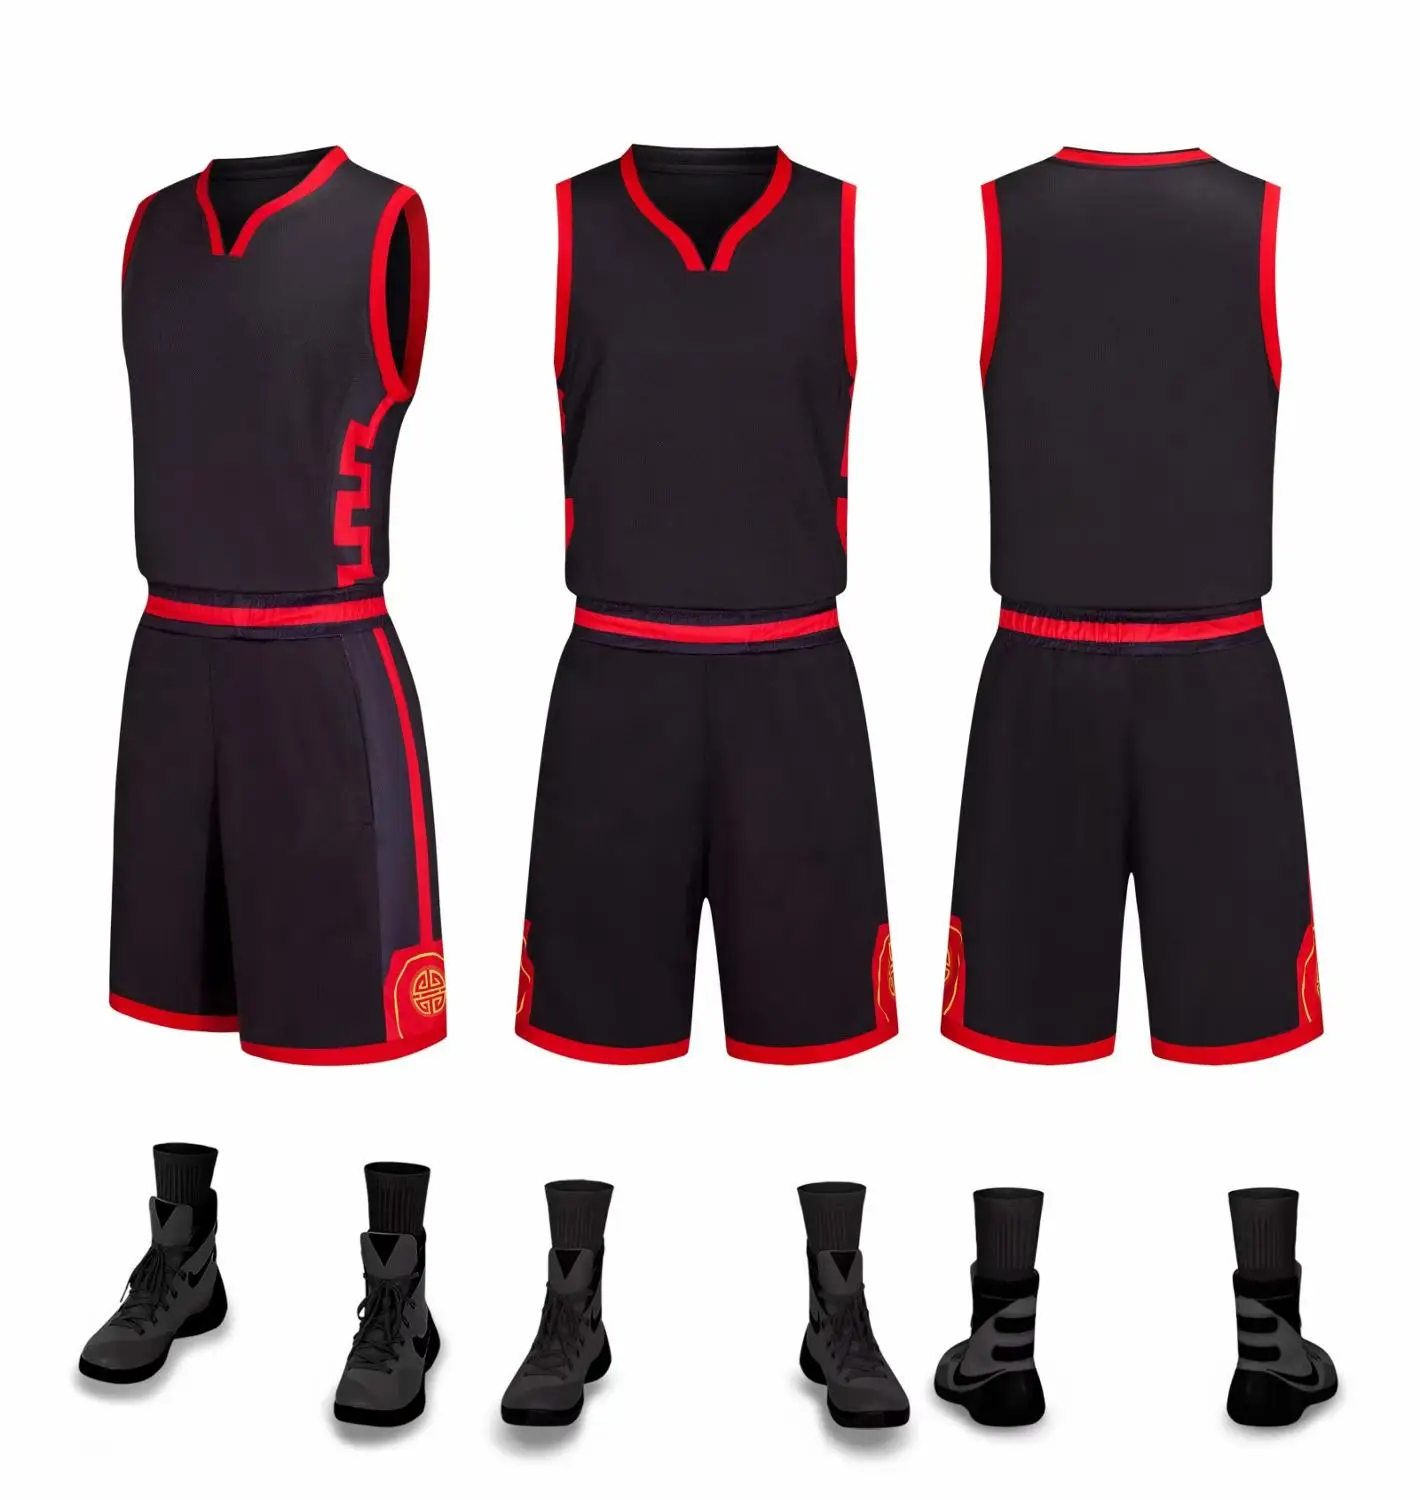 Детские баскетбольные Трикотажные изделия для мальчиков и девочек, форма для бега Наборы спортивный костюм на заказ футбольной команды Детские Молодежные баскетбольные формы, без надписей шорты - Цвет: 879 black